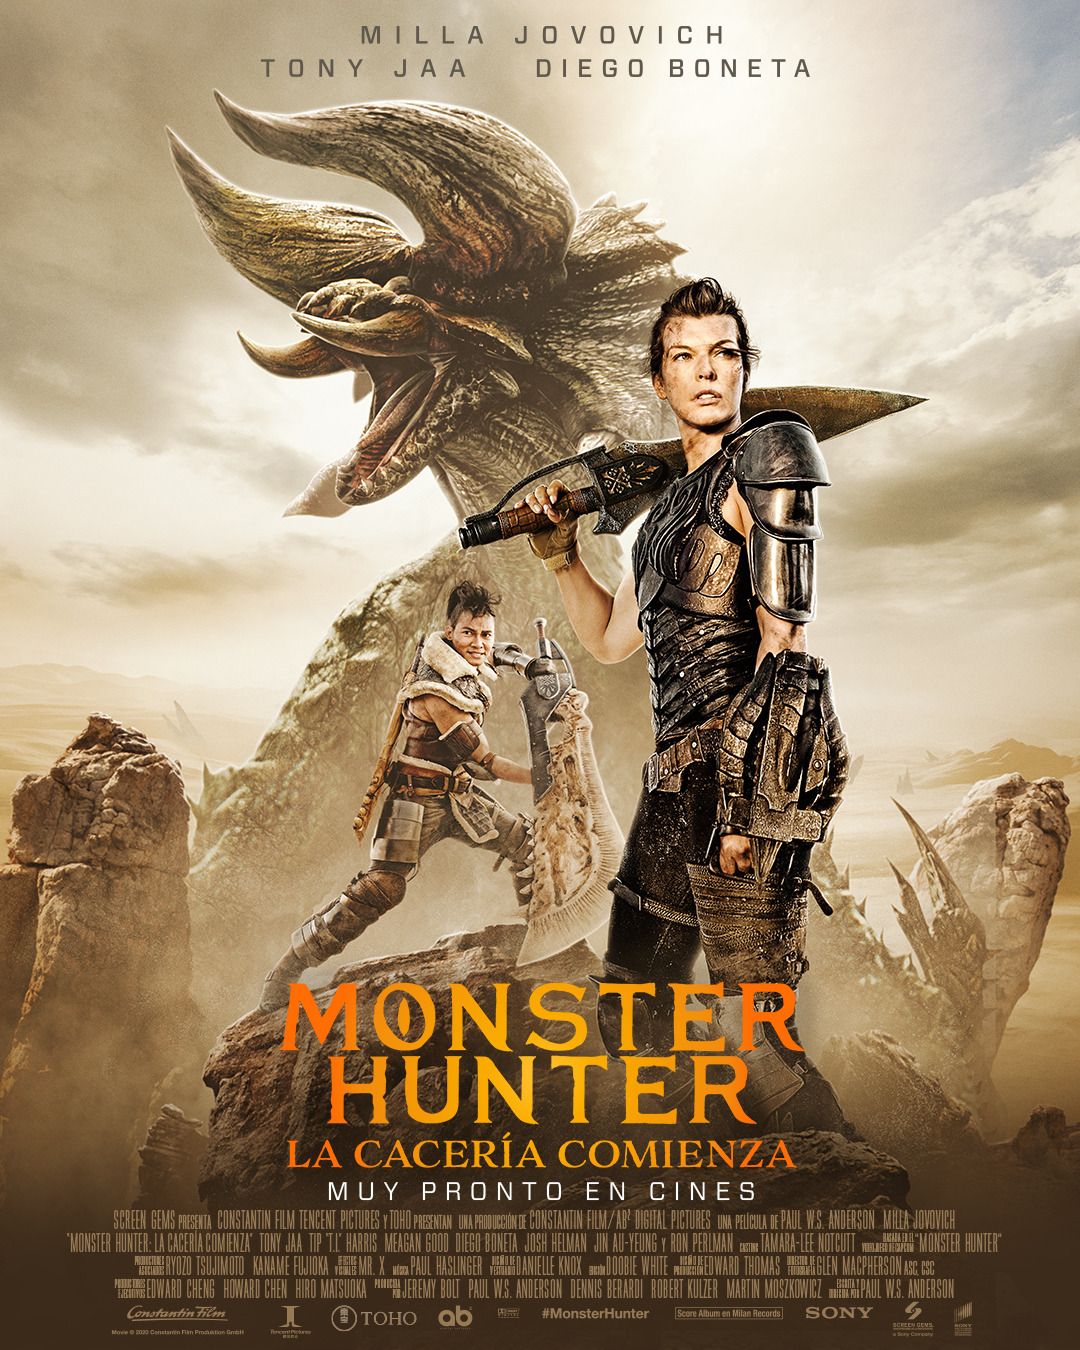 Милла Йовович и котики против огромных монстров — обзор фильма Monster Hunter